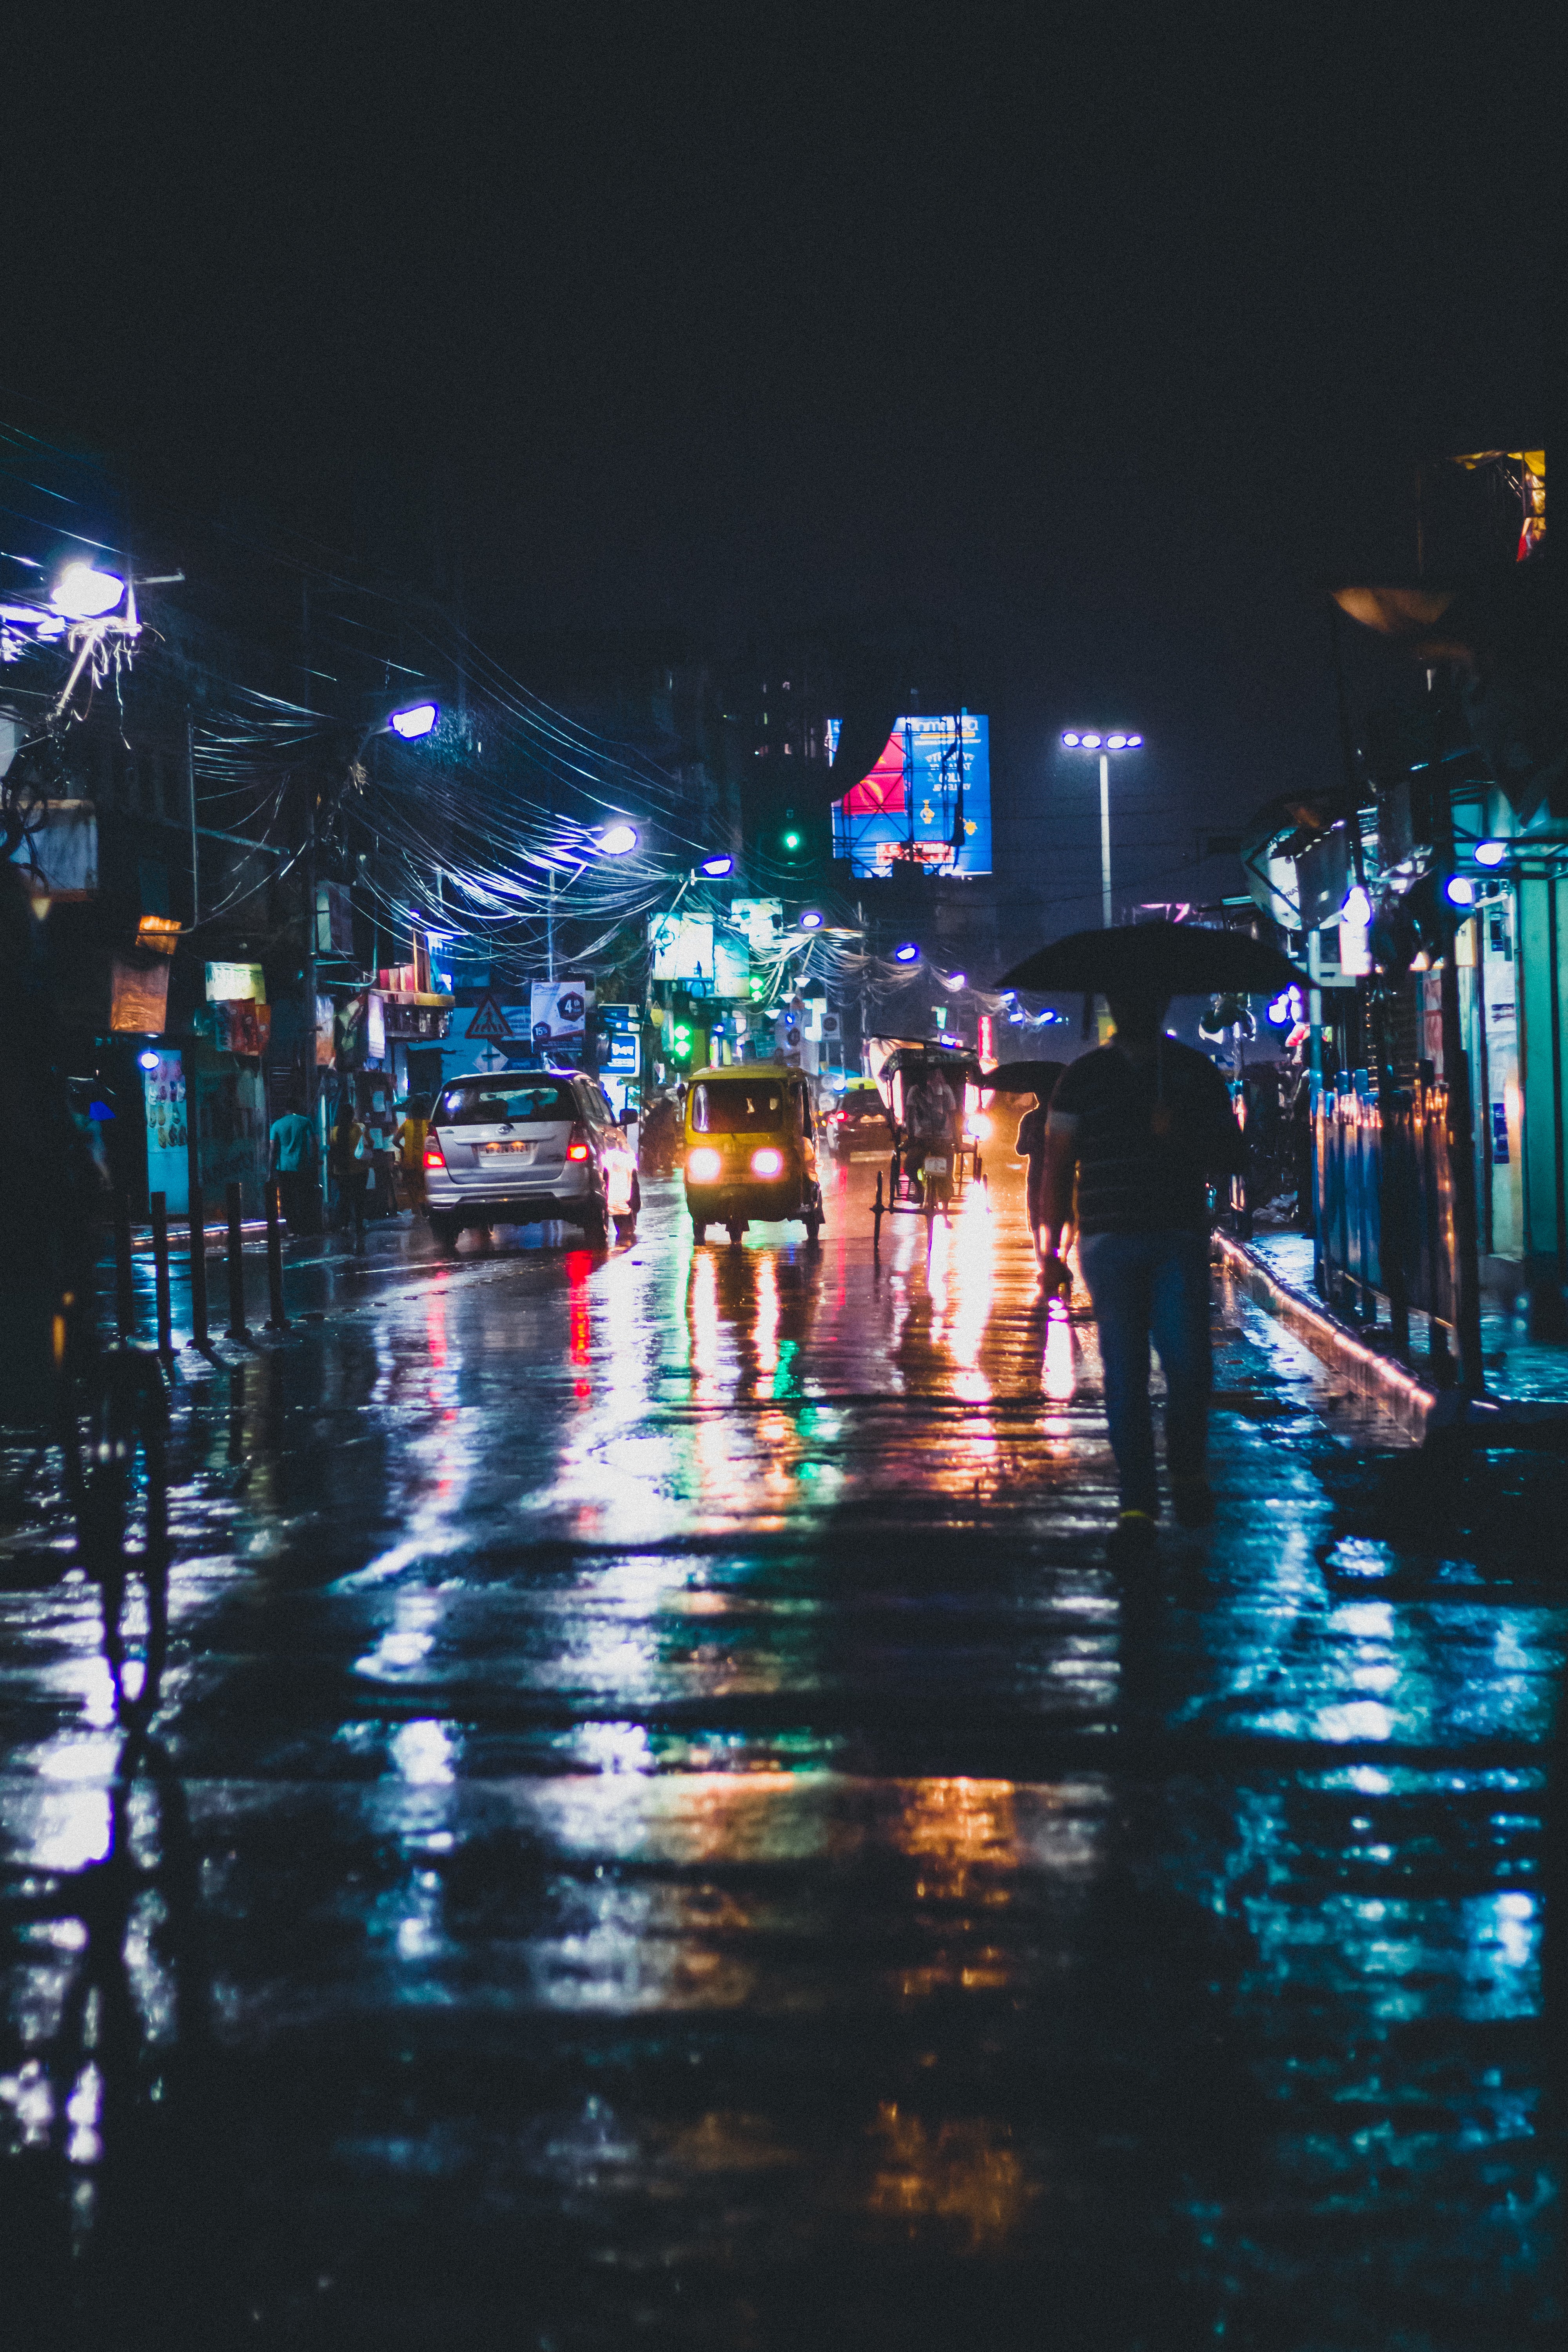 rainy city street